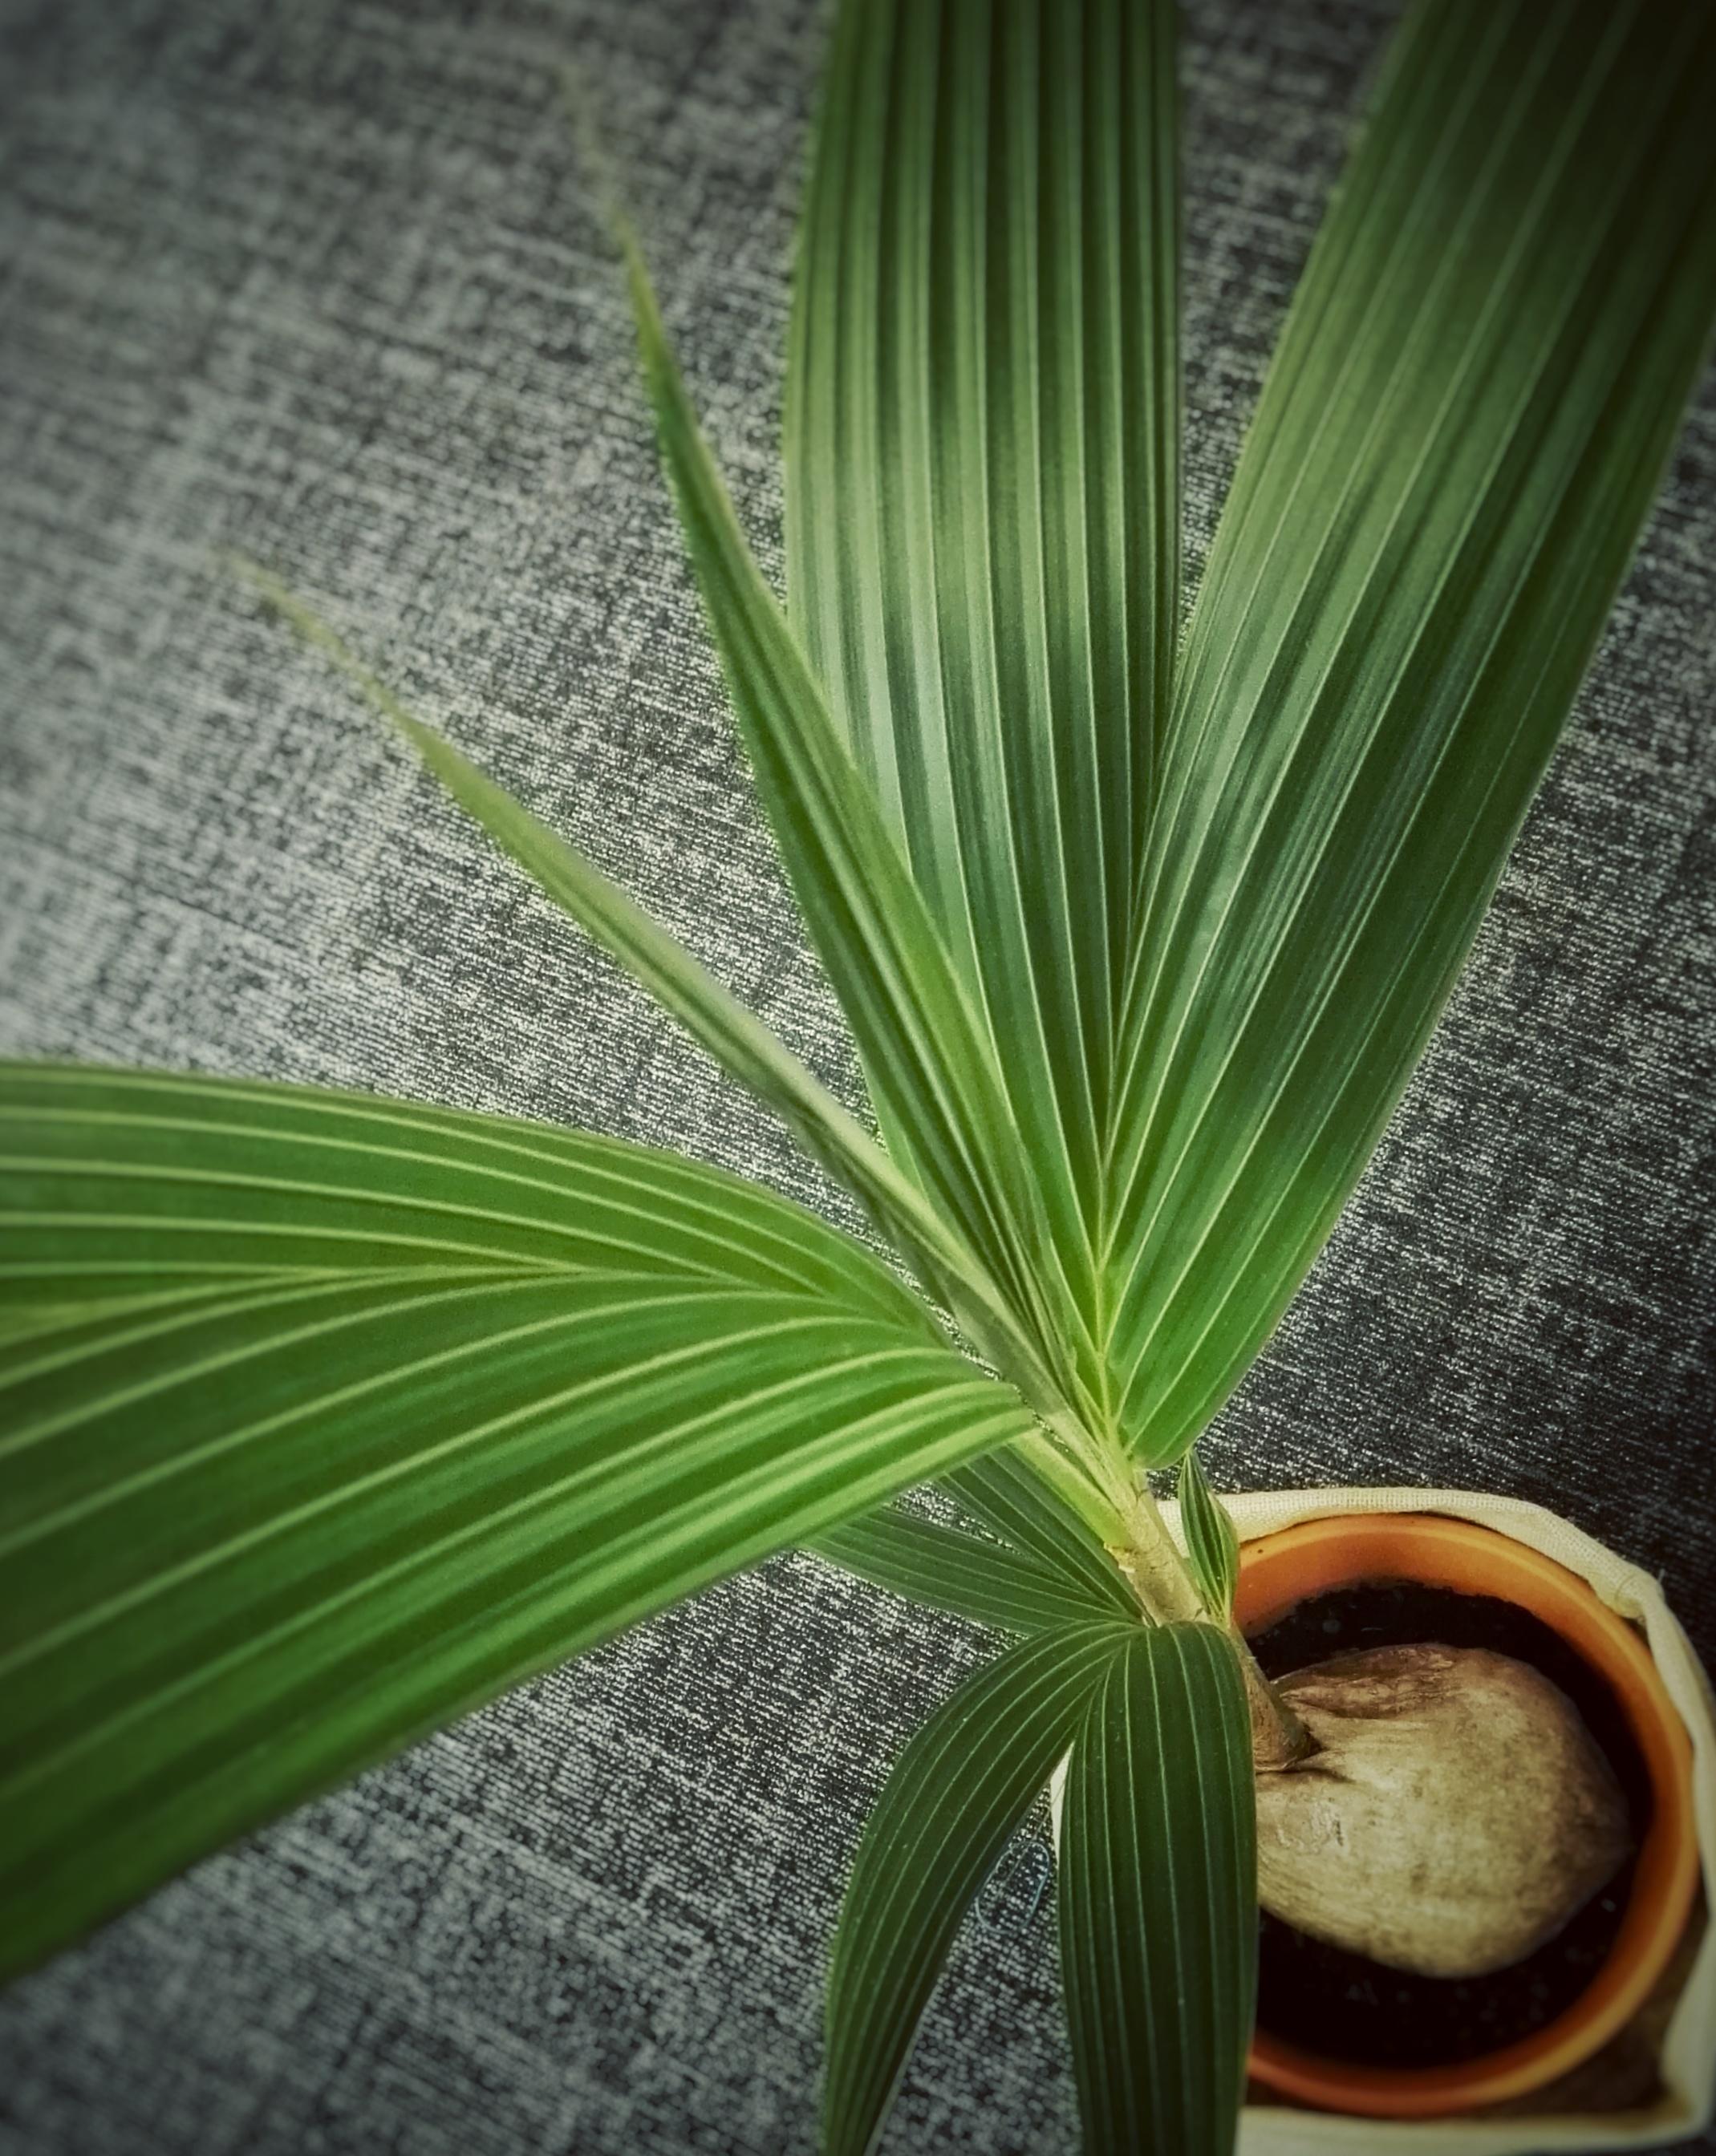 #abinsgrüne #kokosnuss #grün #zimmerpflanze